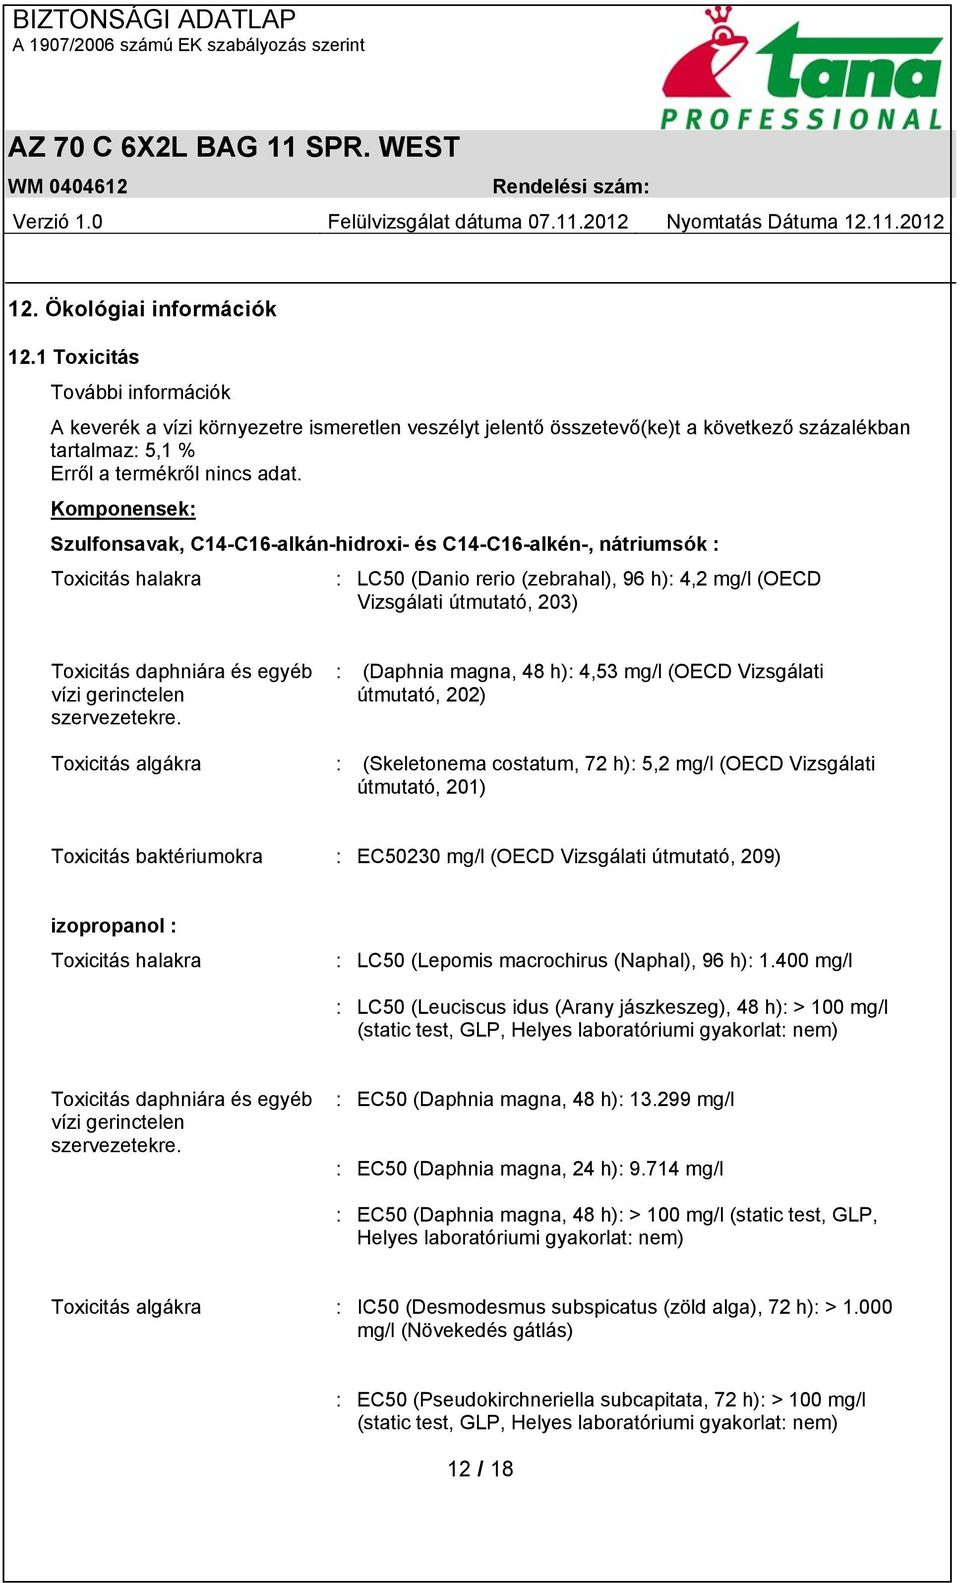 Komponensek: Szulfonsavak, C14-C16-alkán-hidroxi- és C14-C16-alkén-, nátriumsók : Toxicitás halakra : LC50 (Danio rerio (zebrahal), 96 h): 4,2 mg/l (OECD Vizsgálati útmutató, 203) Toxicitás daphniára